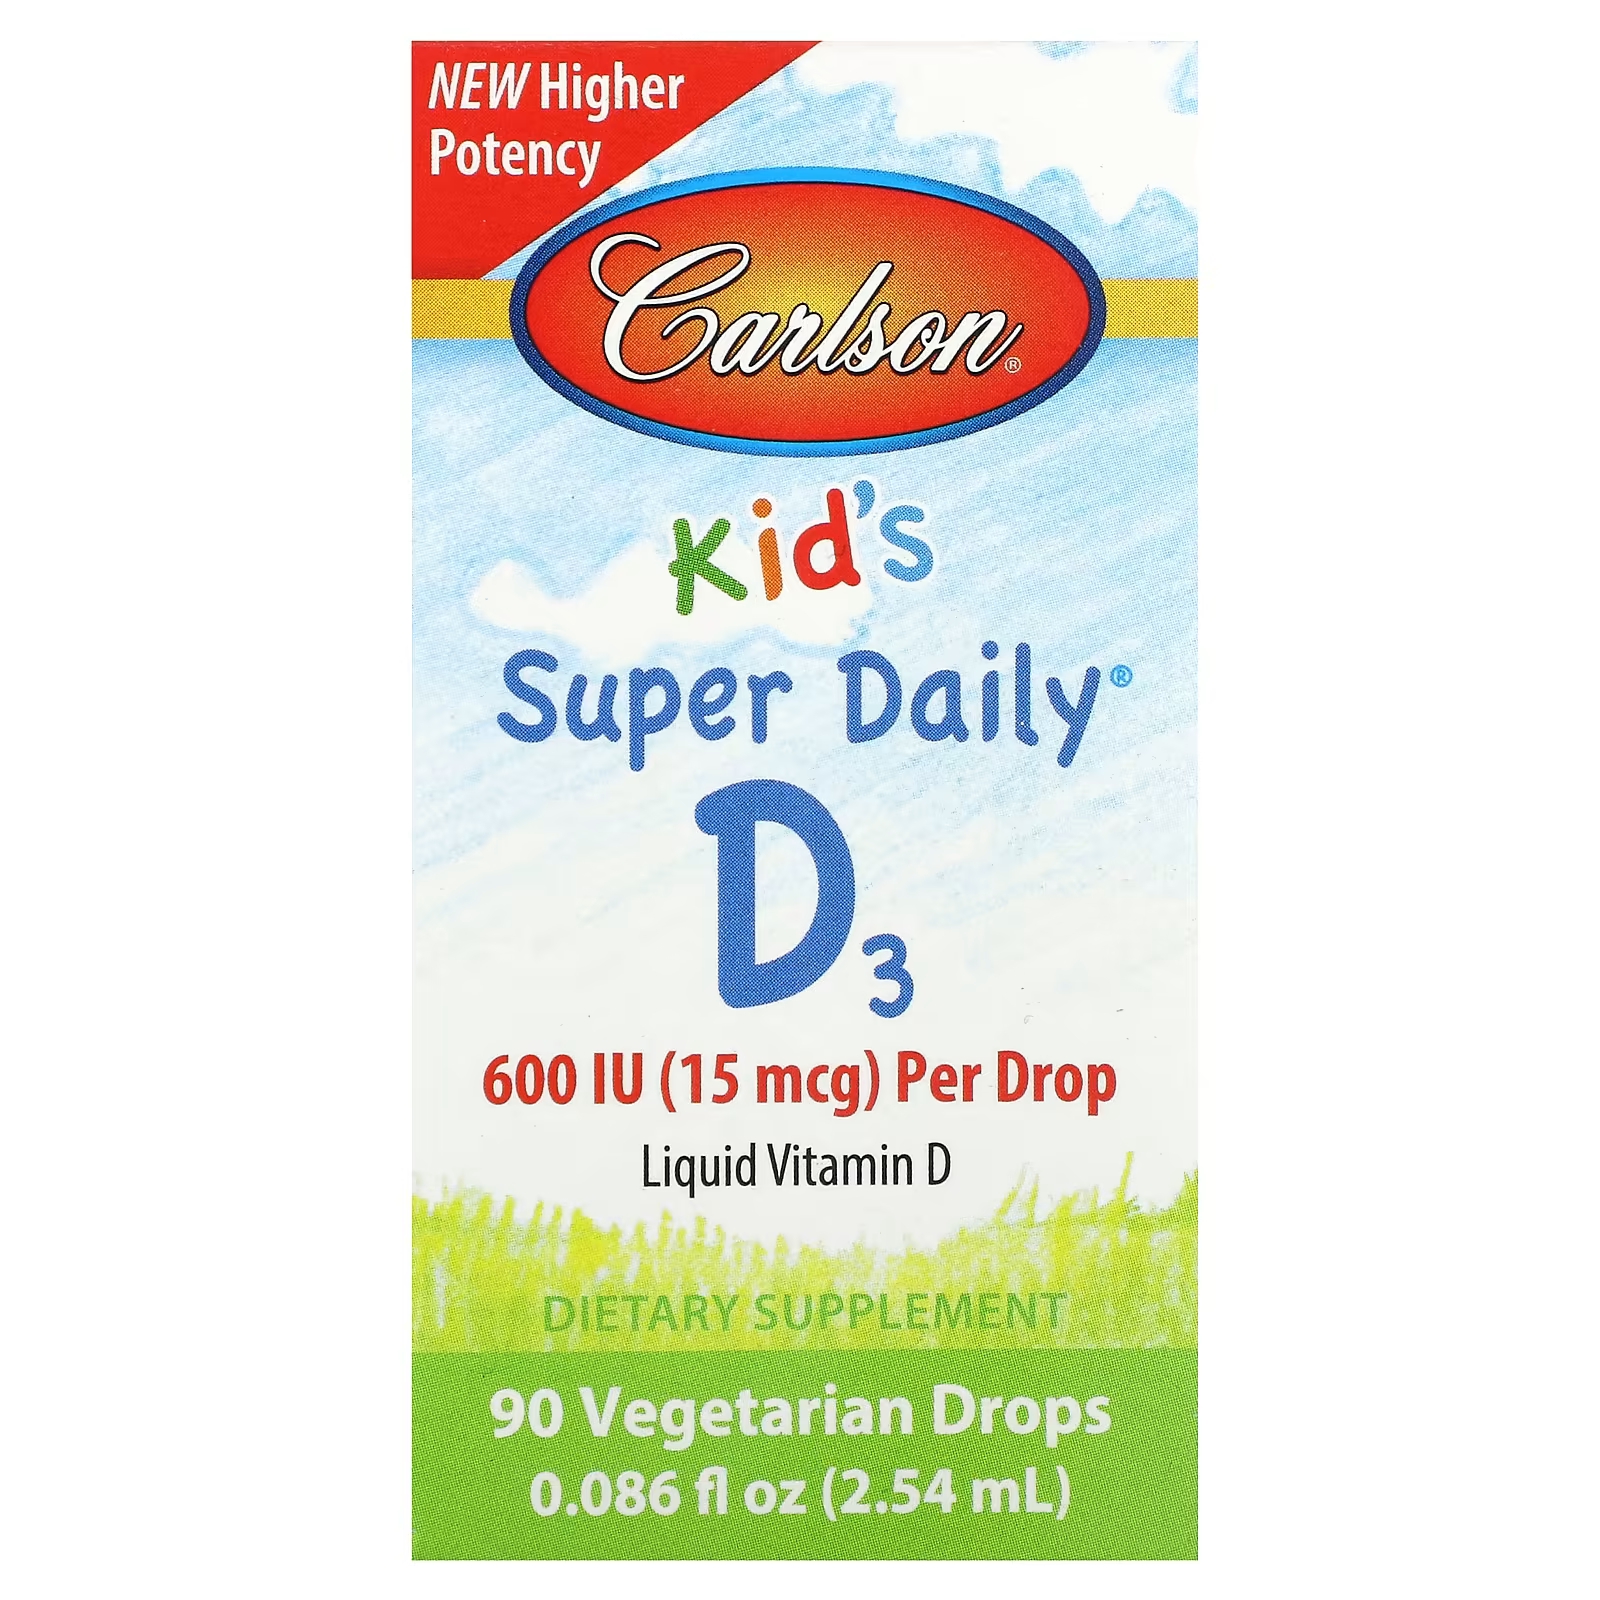 Пищевая добавка Carlson Kid's Super Daily D3 15 мкг, 90 растительных капель carlson kid s super daily d3 15 мкг 600 ме 90 вегетарианских капель 2 54 мл 0 086 жидк унции